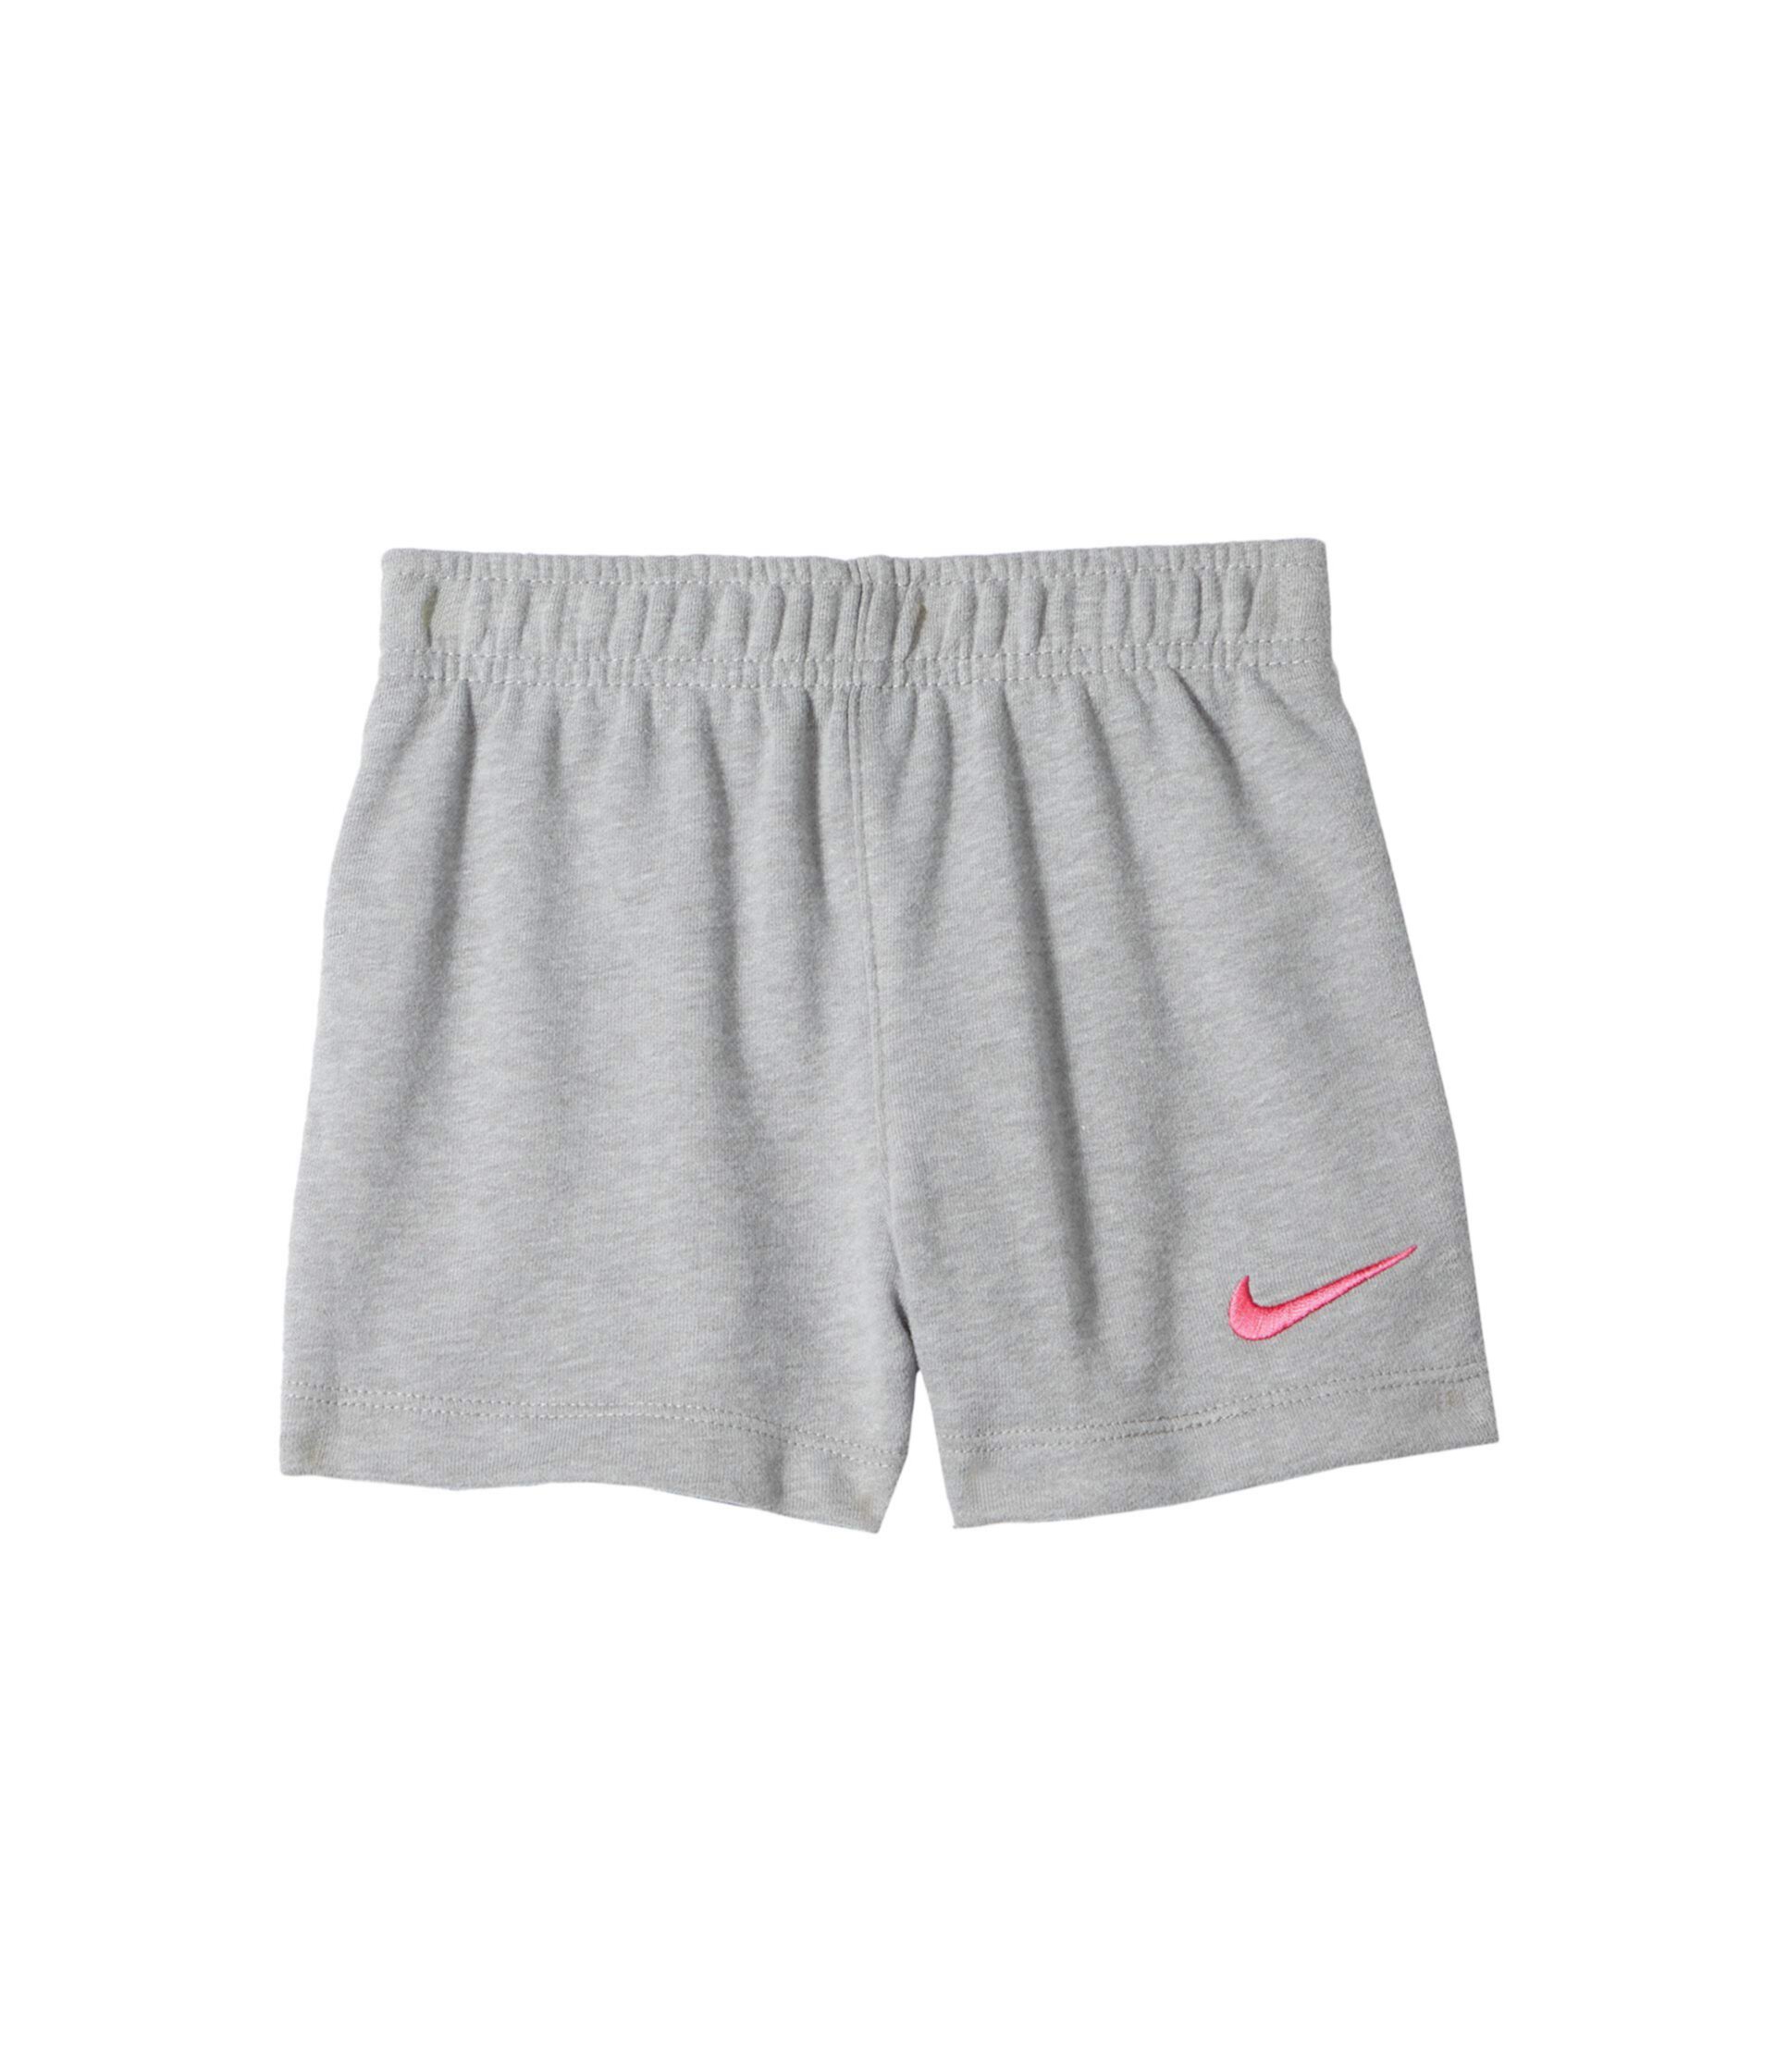 Французские шорты Терри (Малыш) Nike Kids